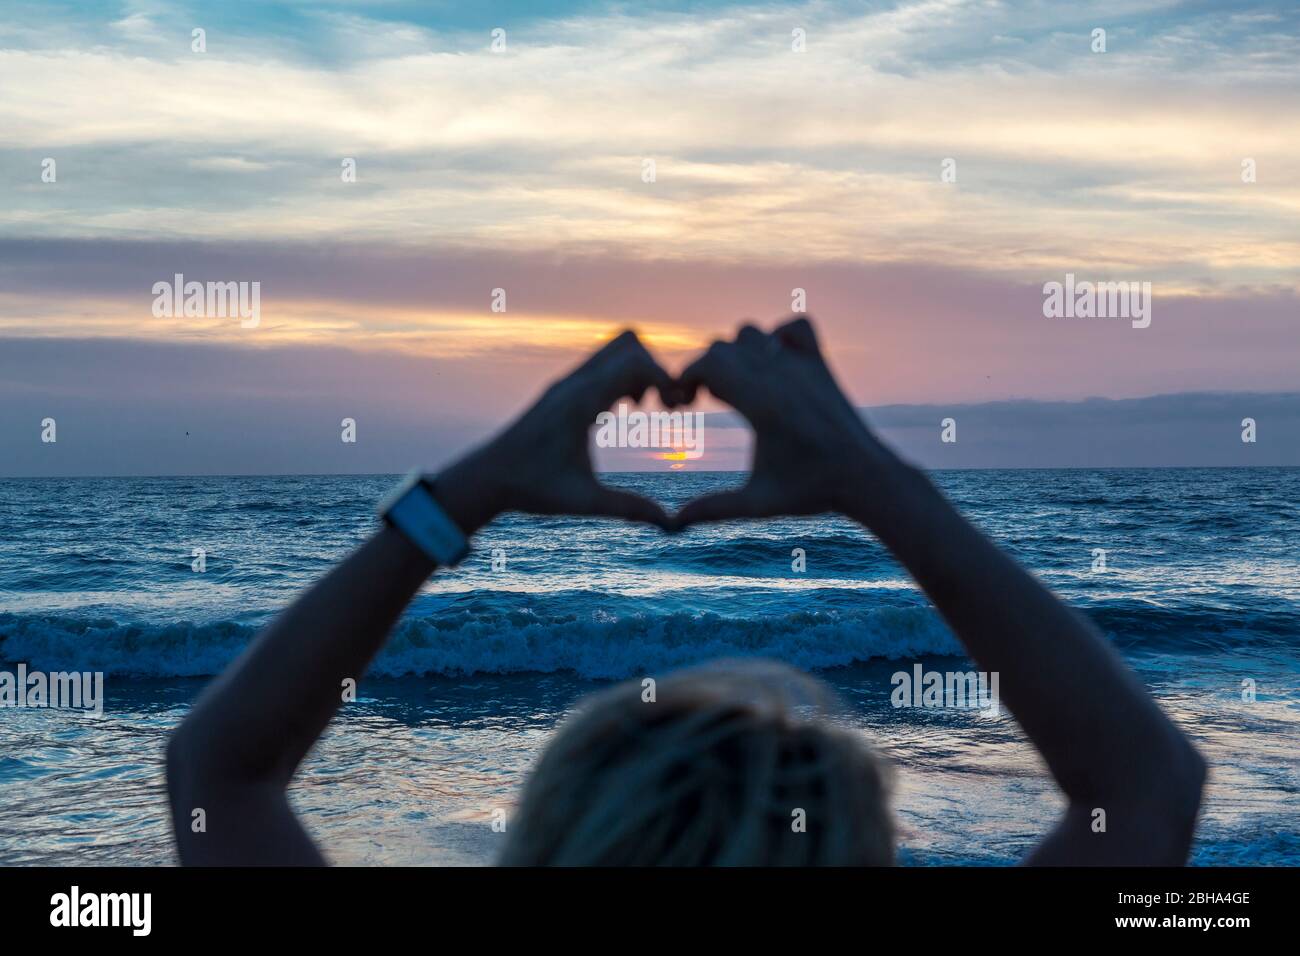 Frau formt Herz mit ihren Händen, Sonnenaufgang, Cocoa Beach, Florida, USA, Nordamerika Foto Stock